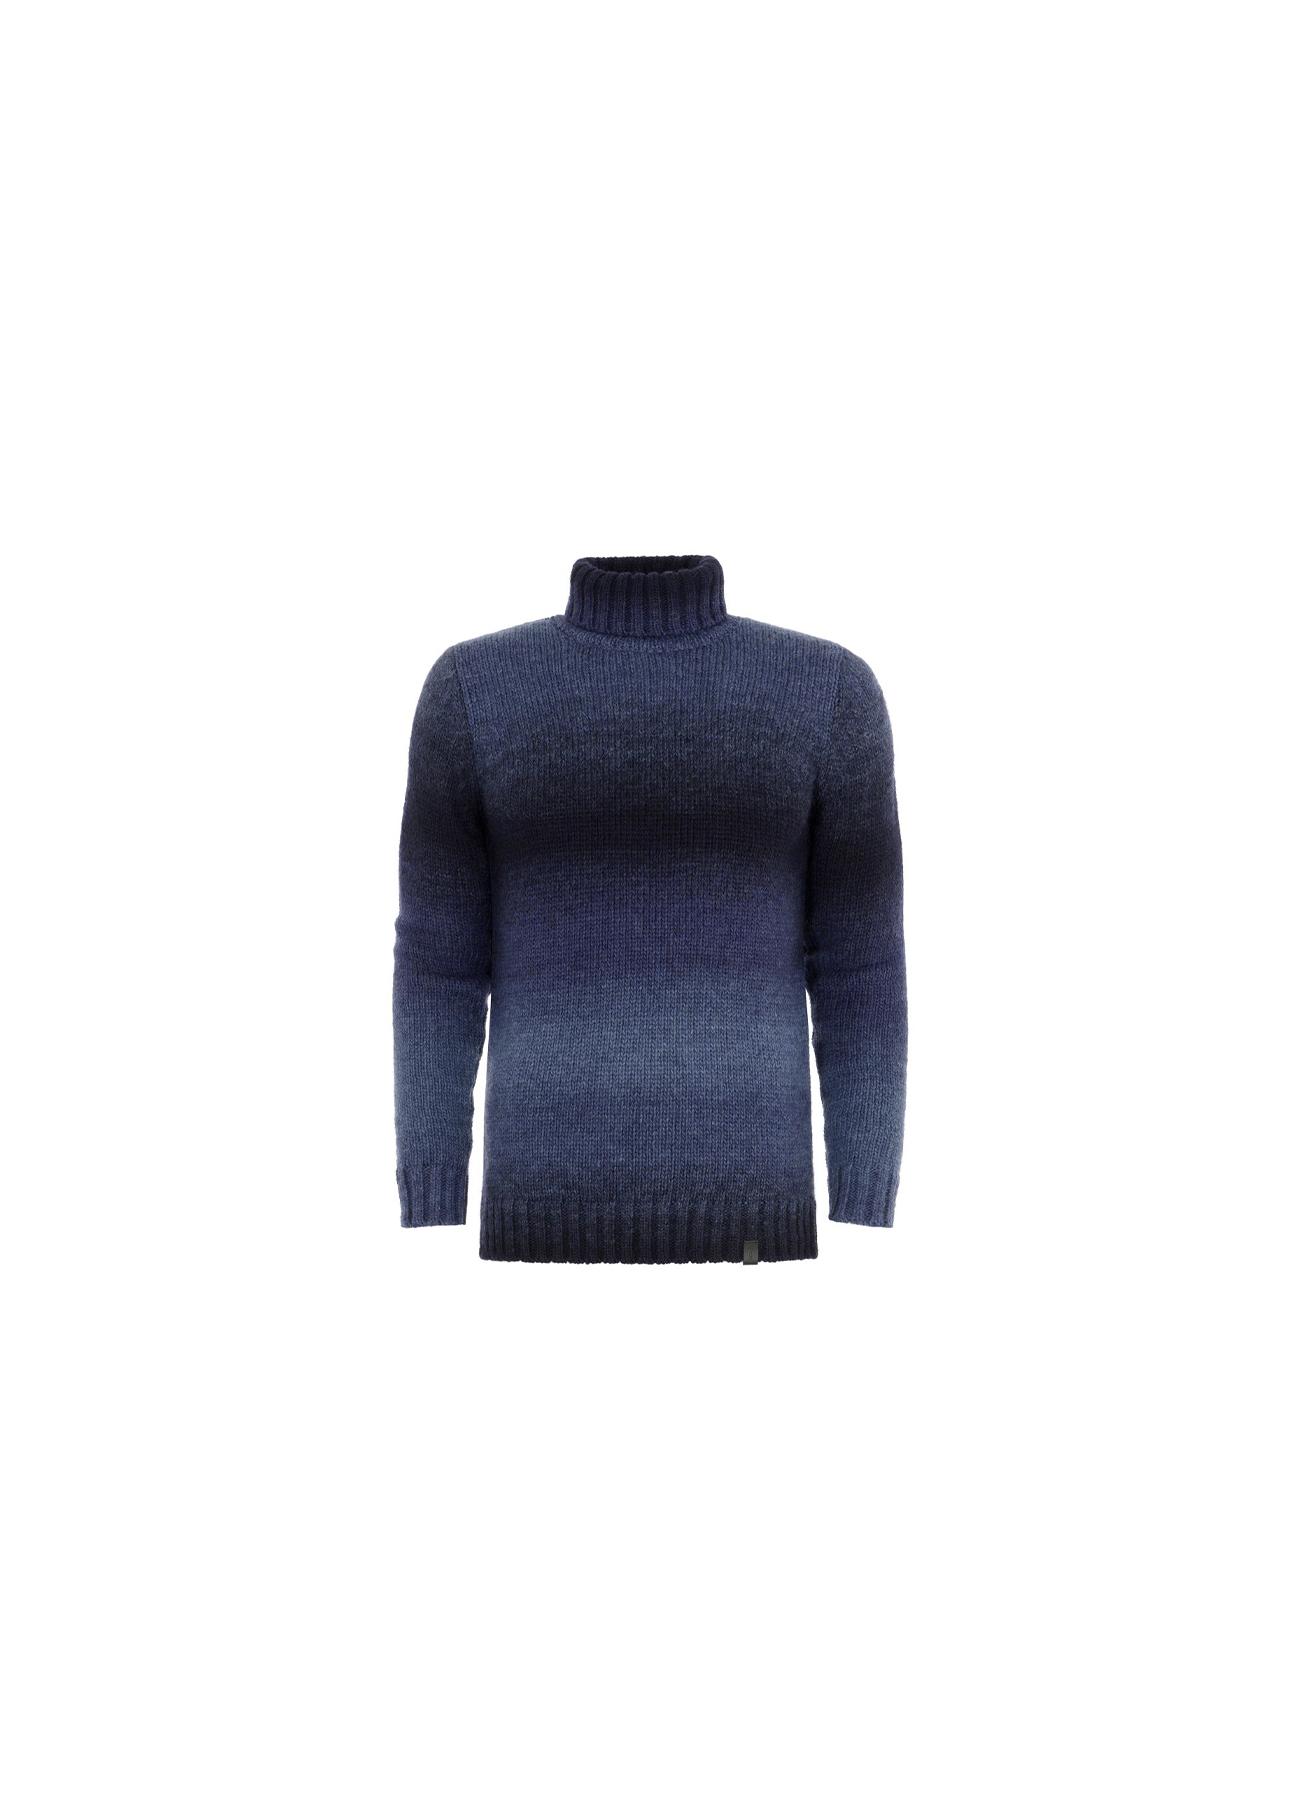 Sweter męski SWEMT-0088-69(Z20)